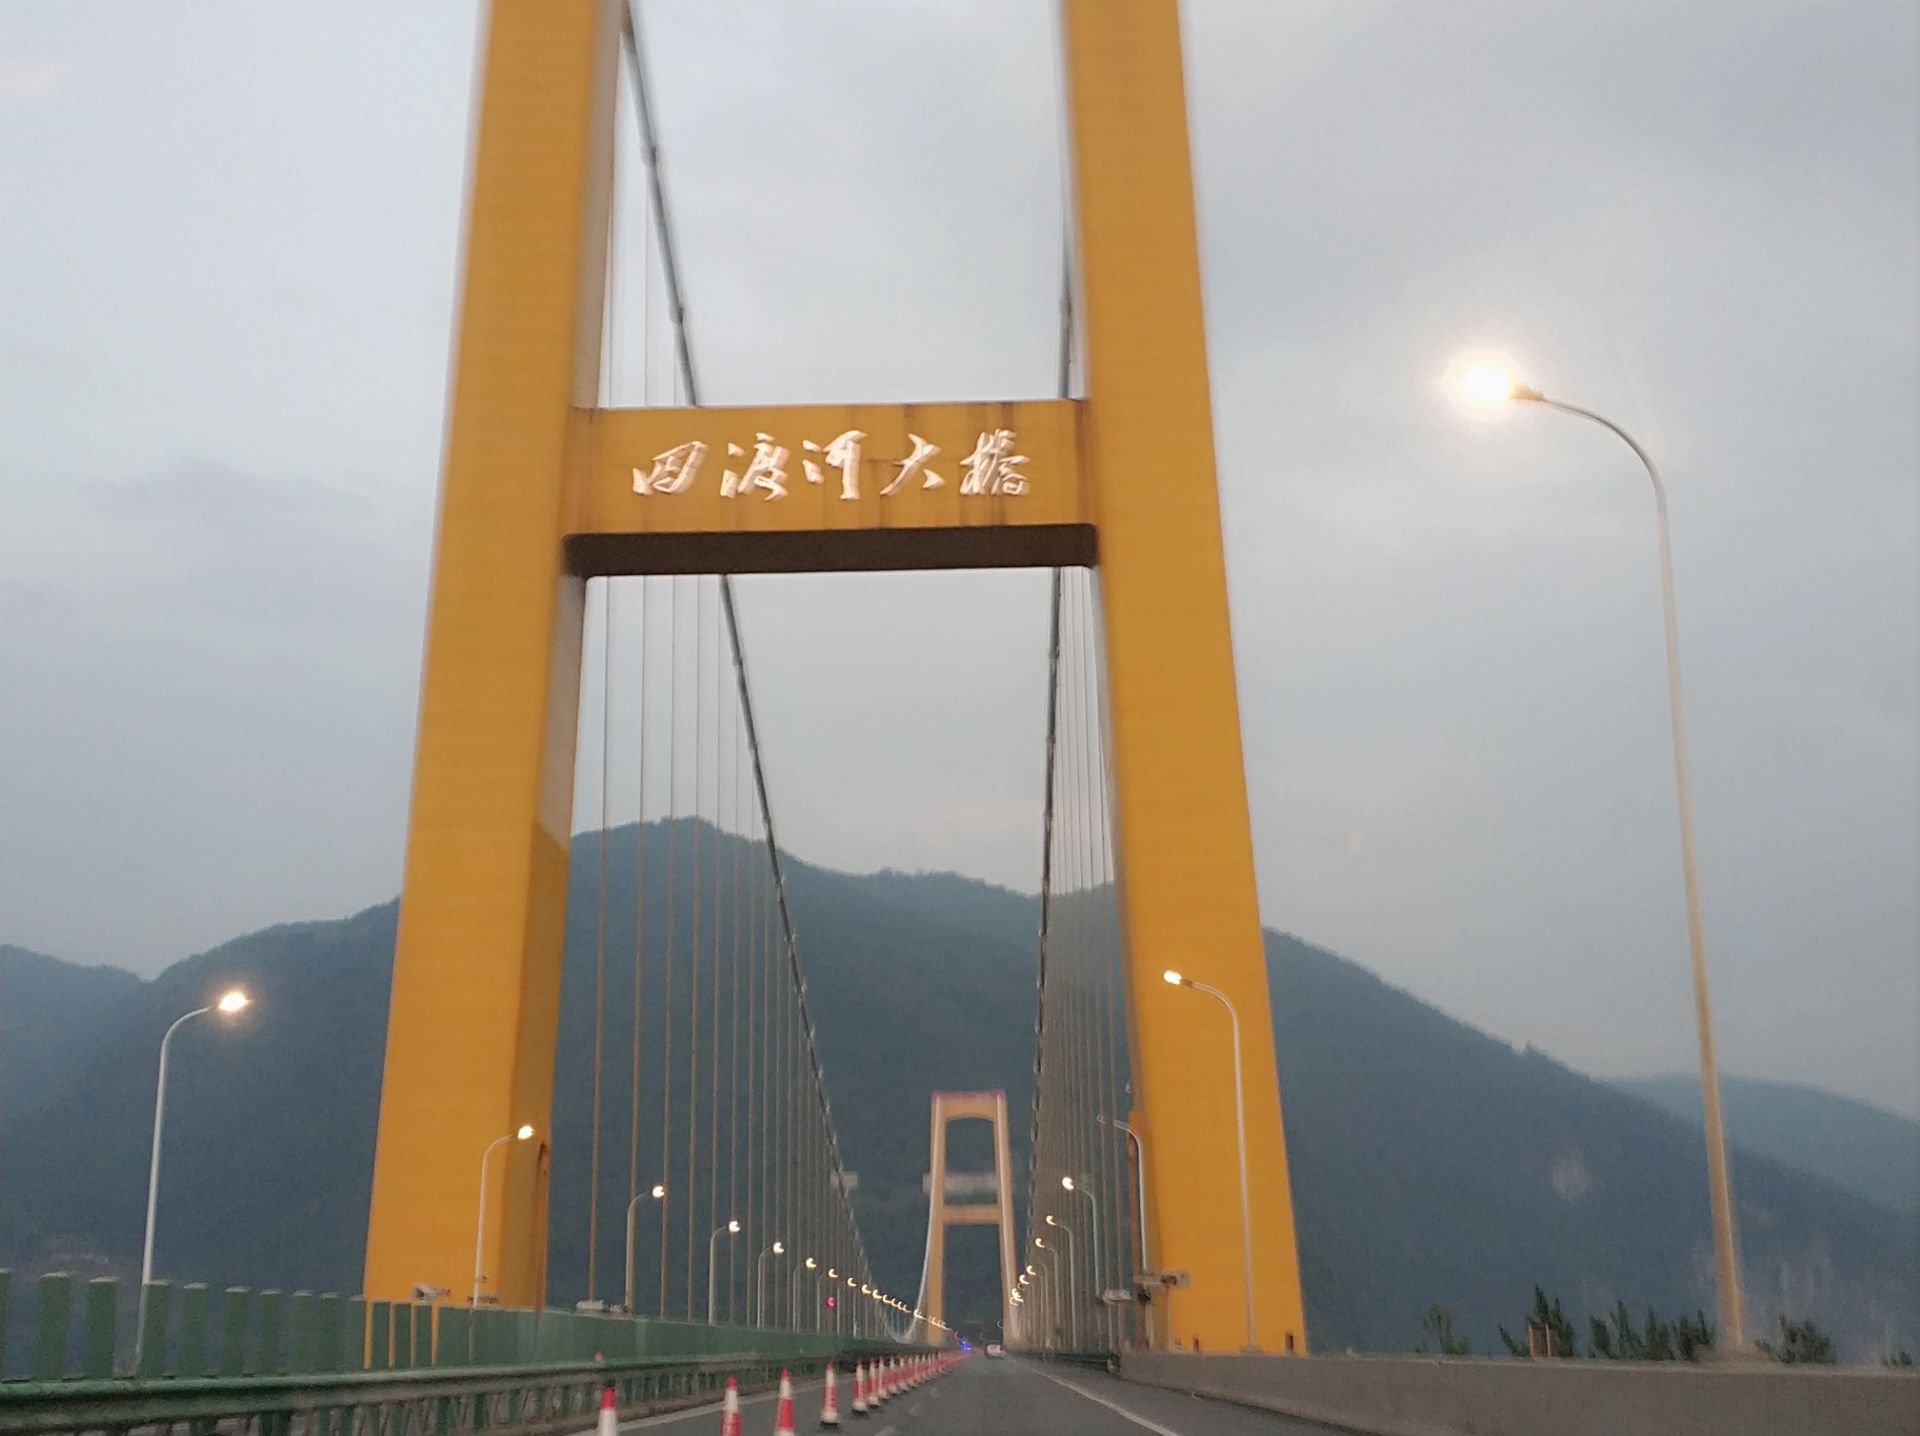 四渡河大桥,号称世界第一高桥,位于湖北省巴东县野三关镇行政区域范围